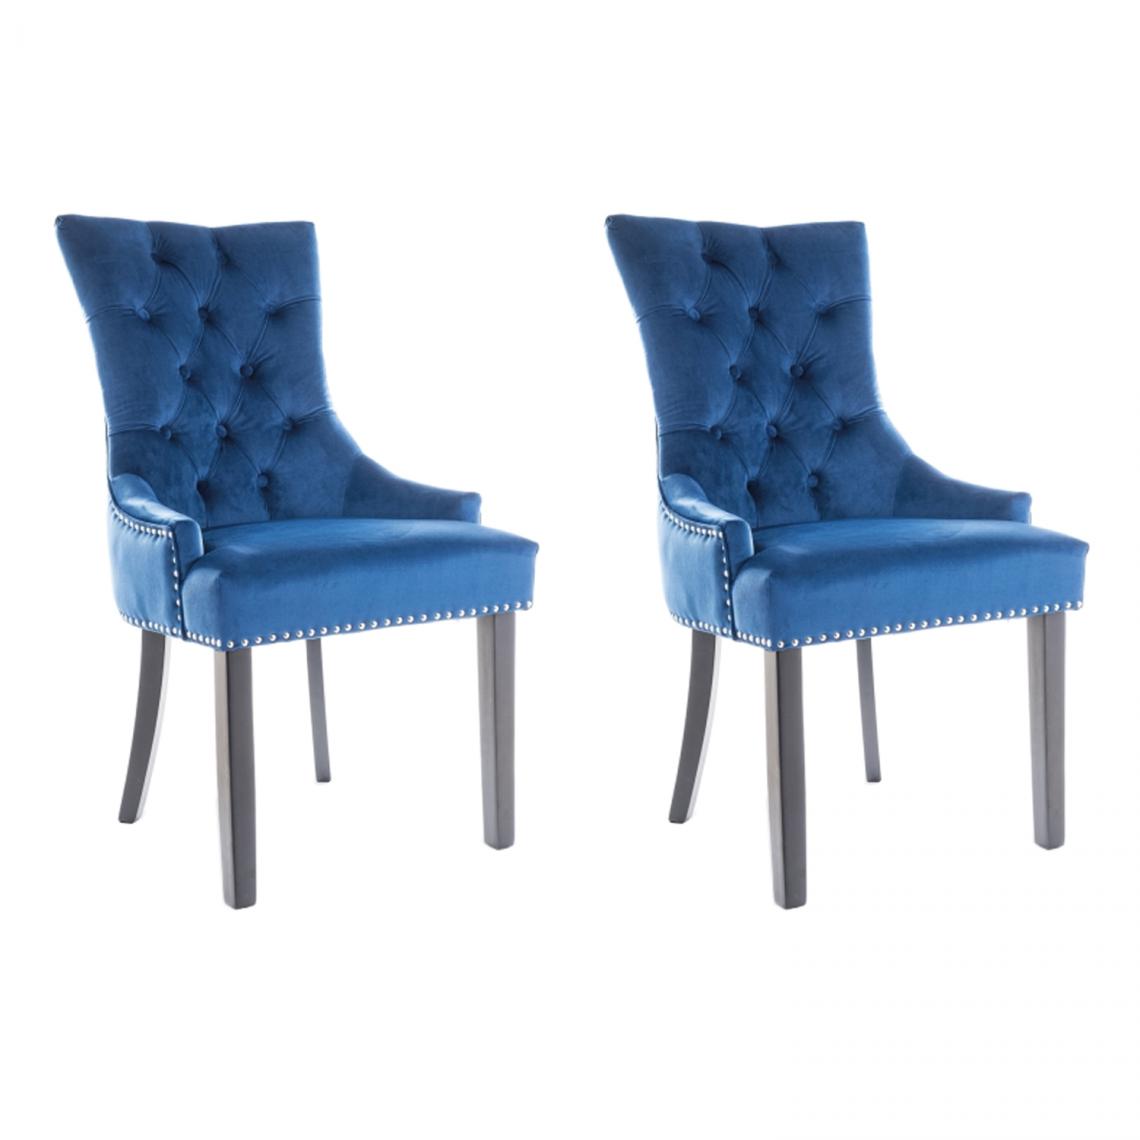 Hucoco - EDWARG - Lot de 2 chaises élégantes - Dimensions 99x55x45 cm - Revêtement en velours - Style glamour - Blue - Chaises